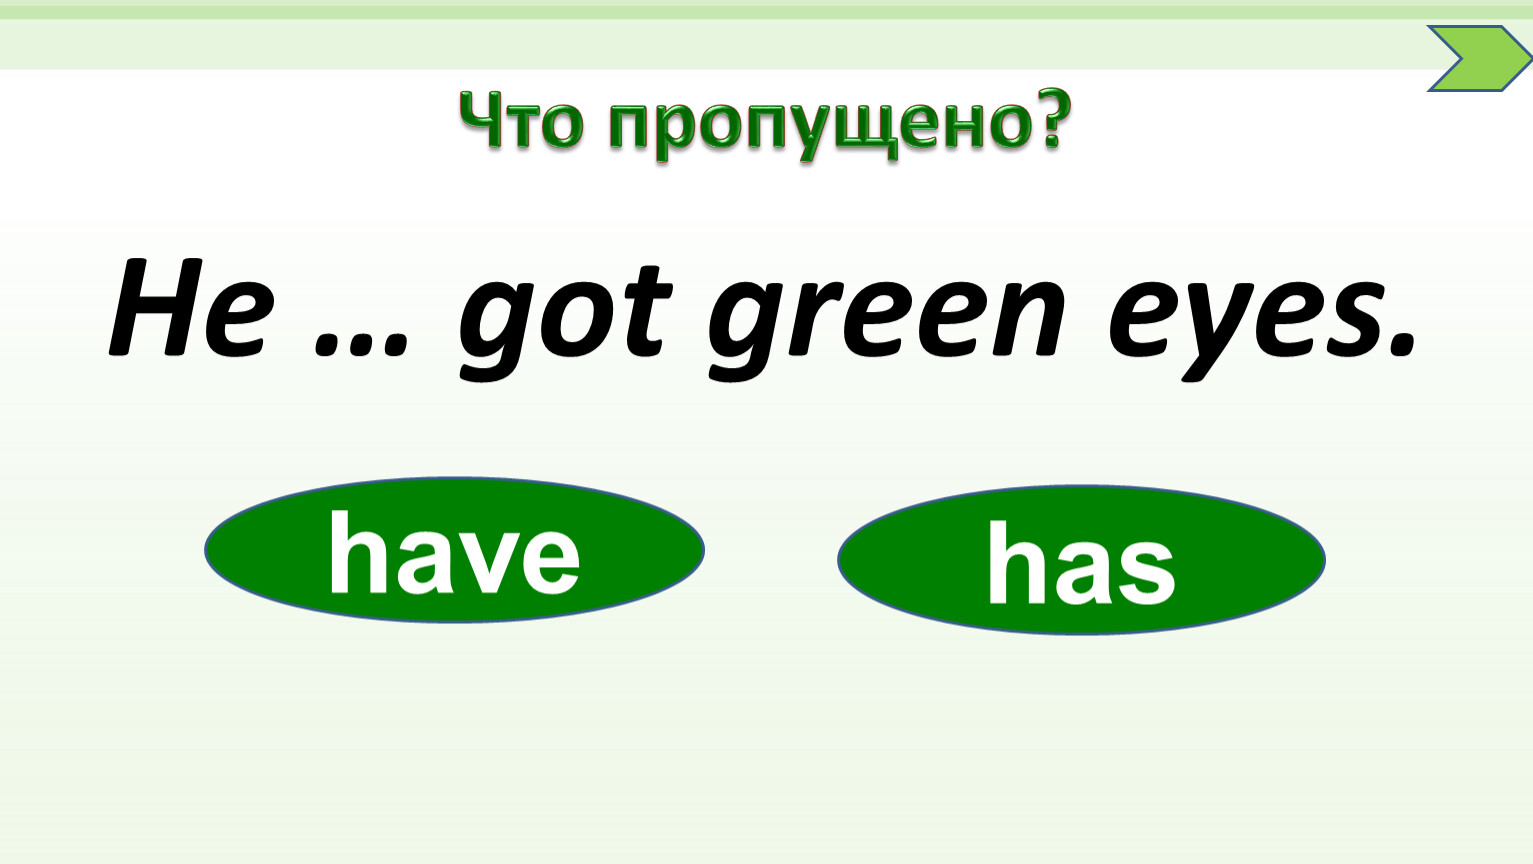 Mummy has got green. Has got Green Eyes. Get Green. Got Green Eyes. Маме has got Green Eyes.